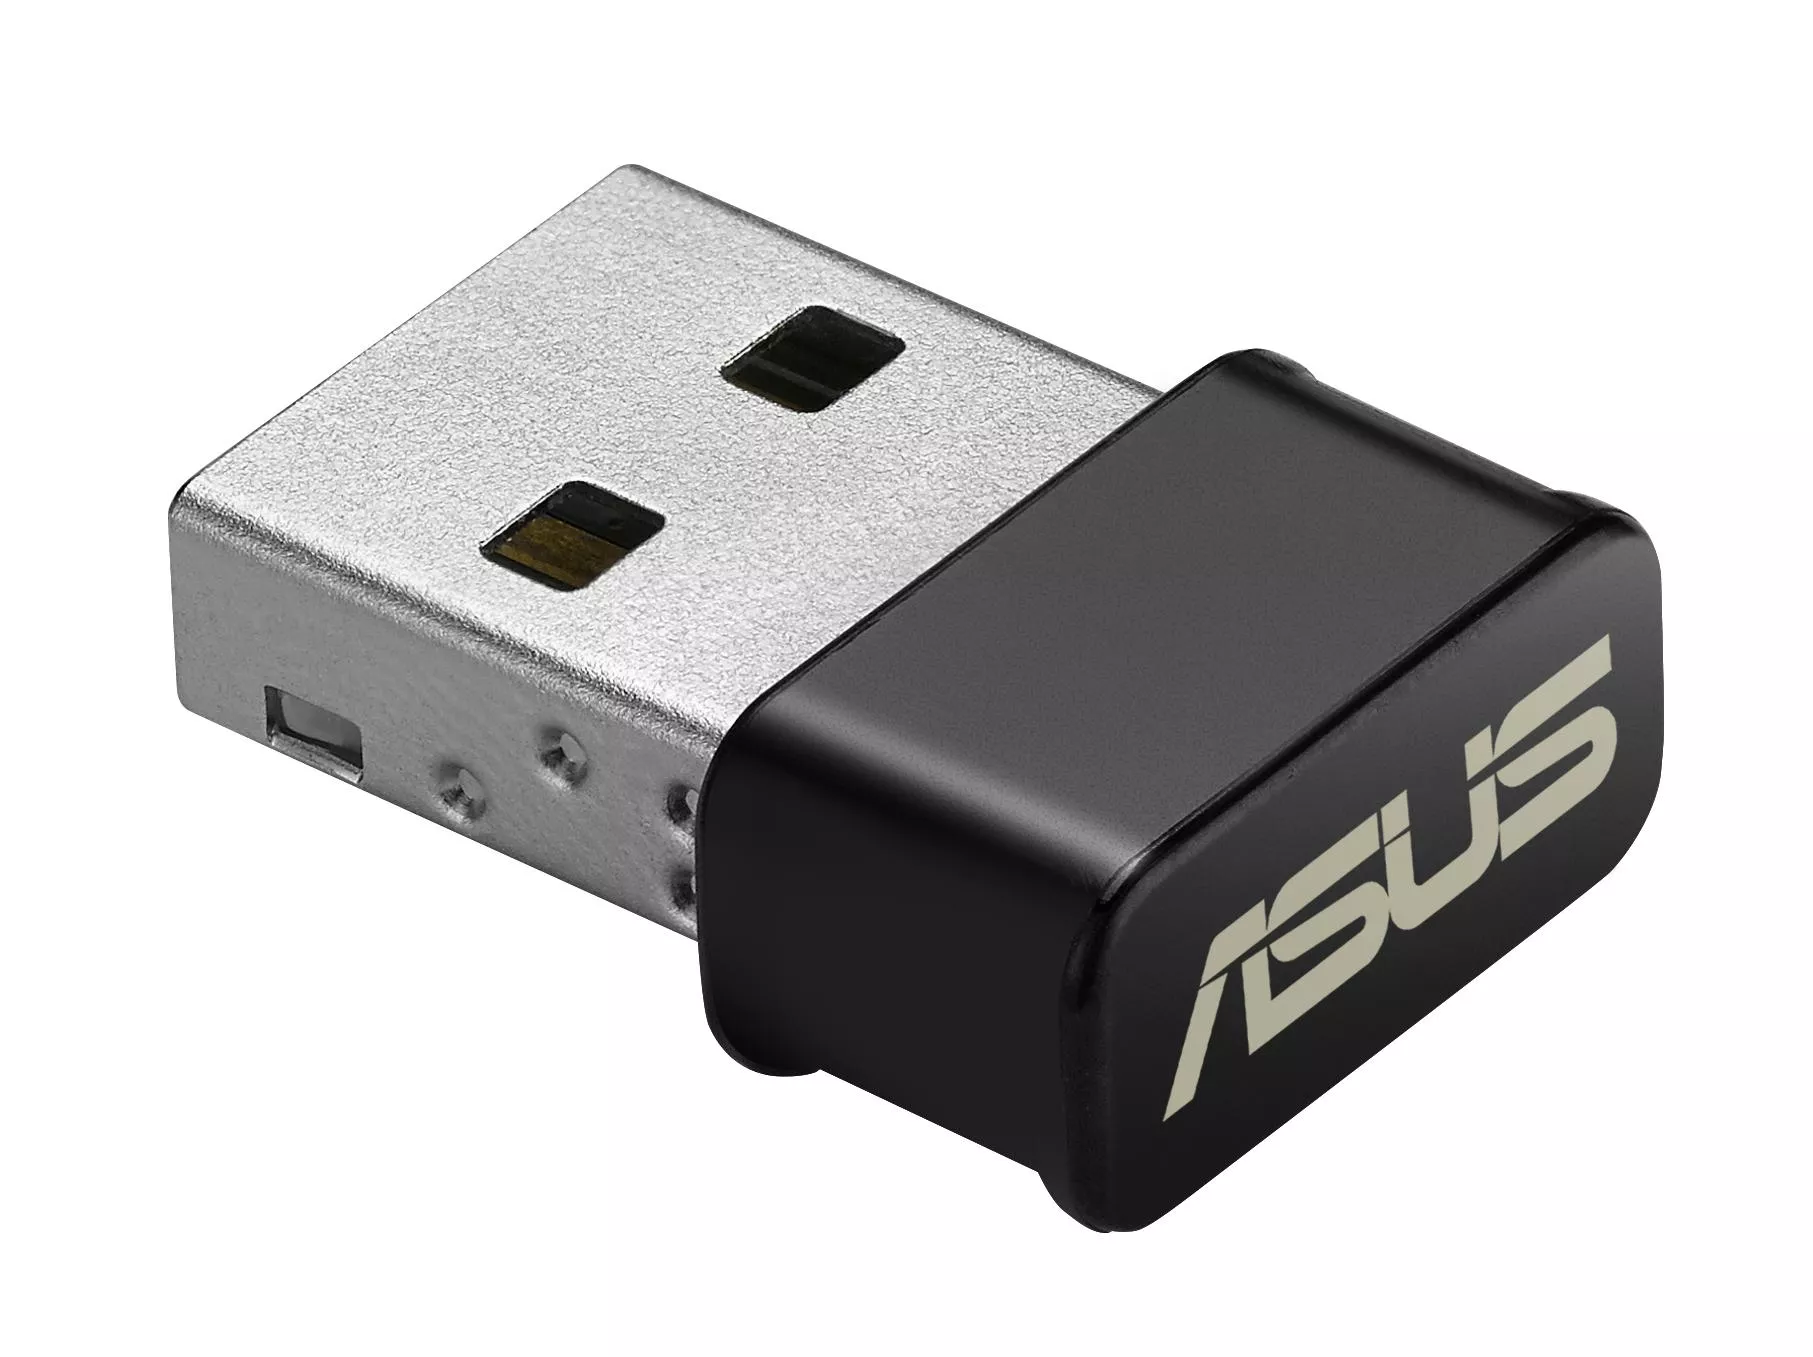 Achat ASUS USB-AC53 Nano et autres produits de la marque ASUS